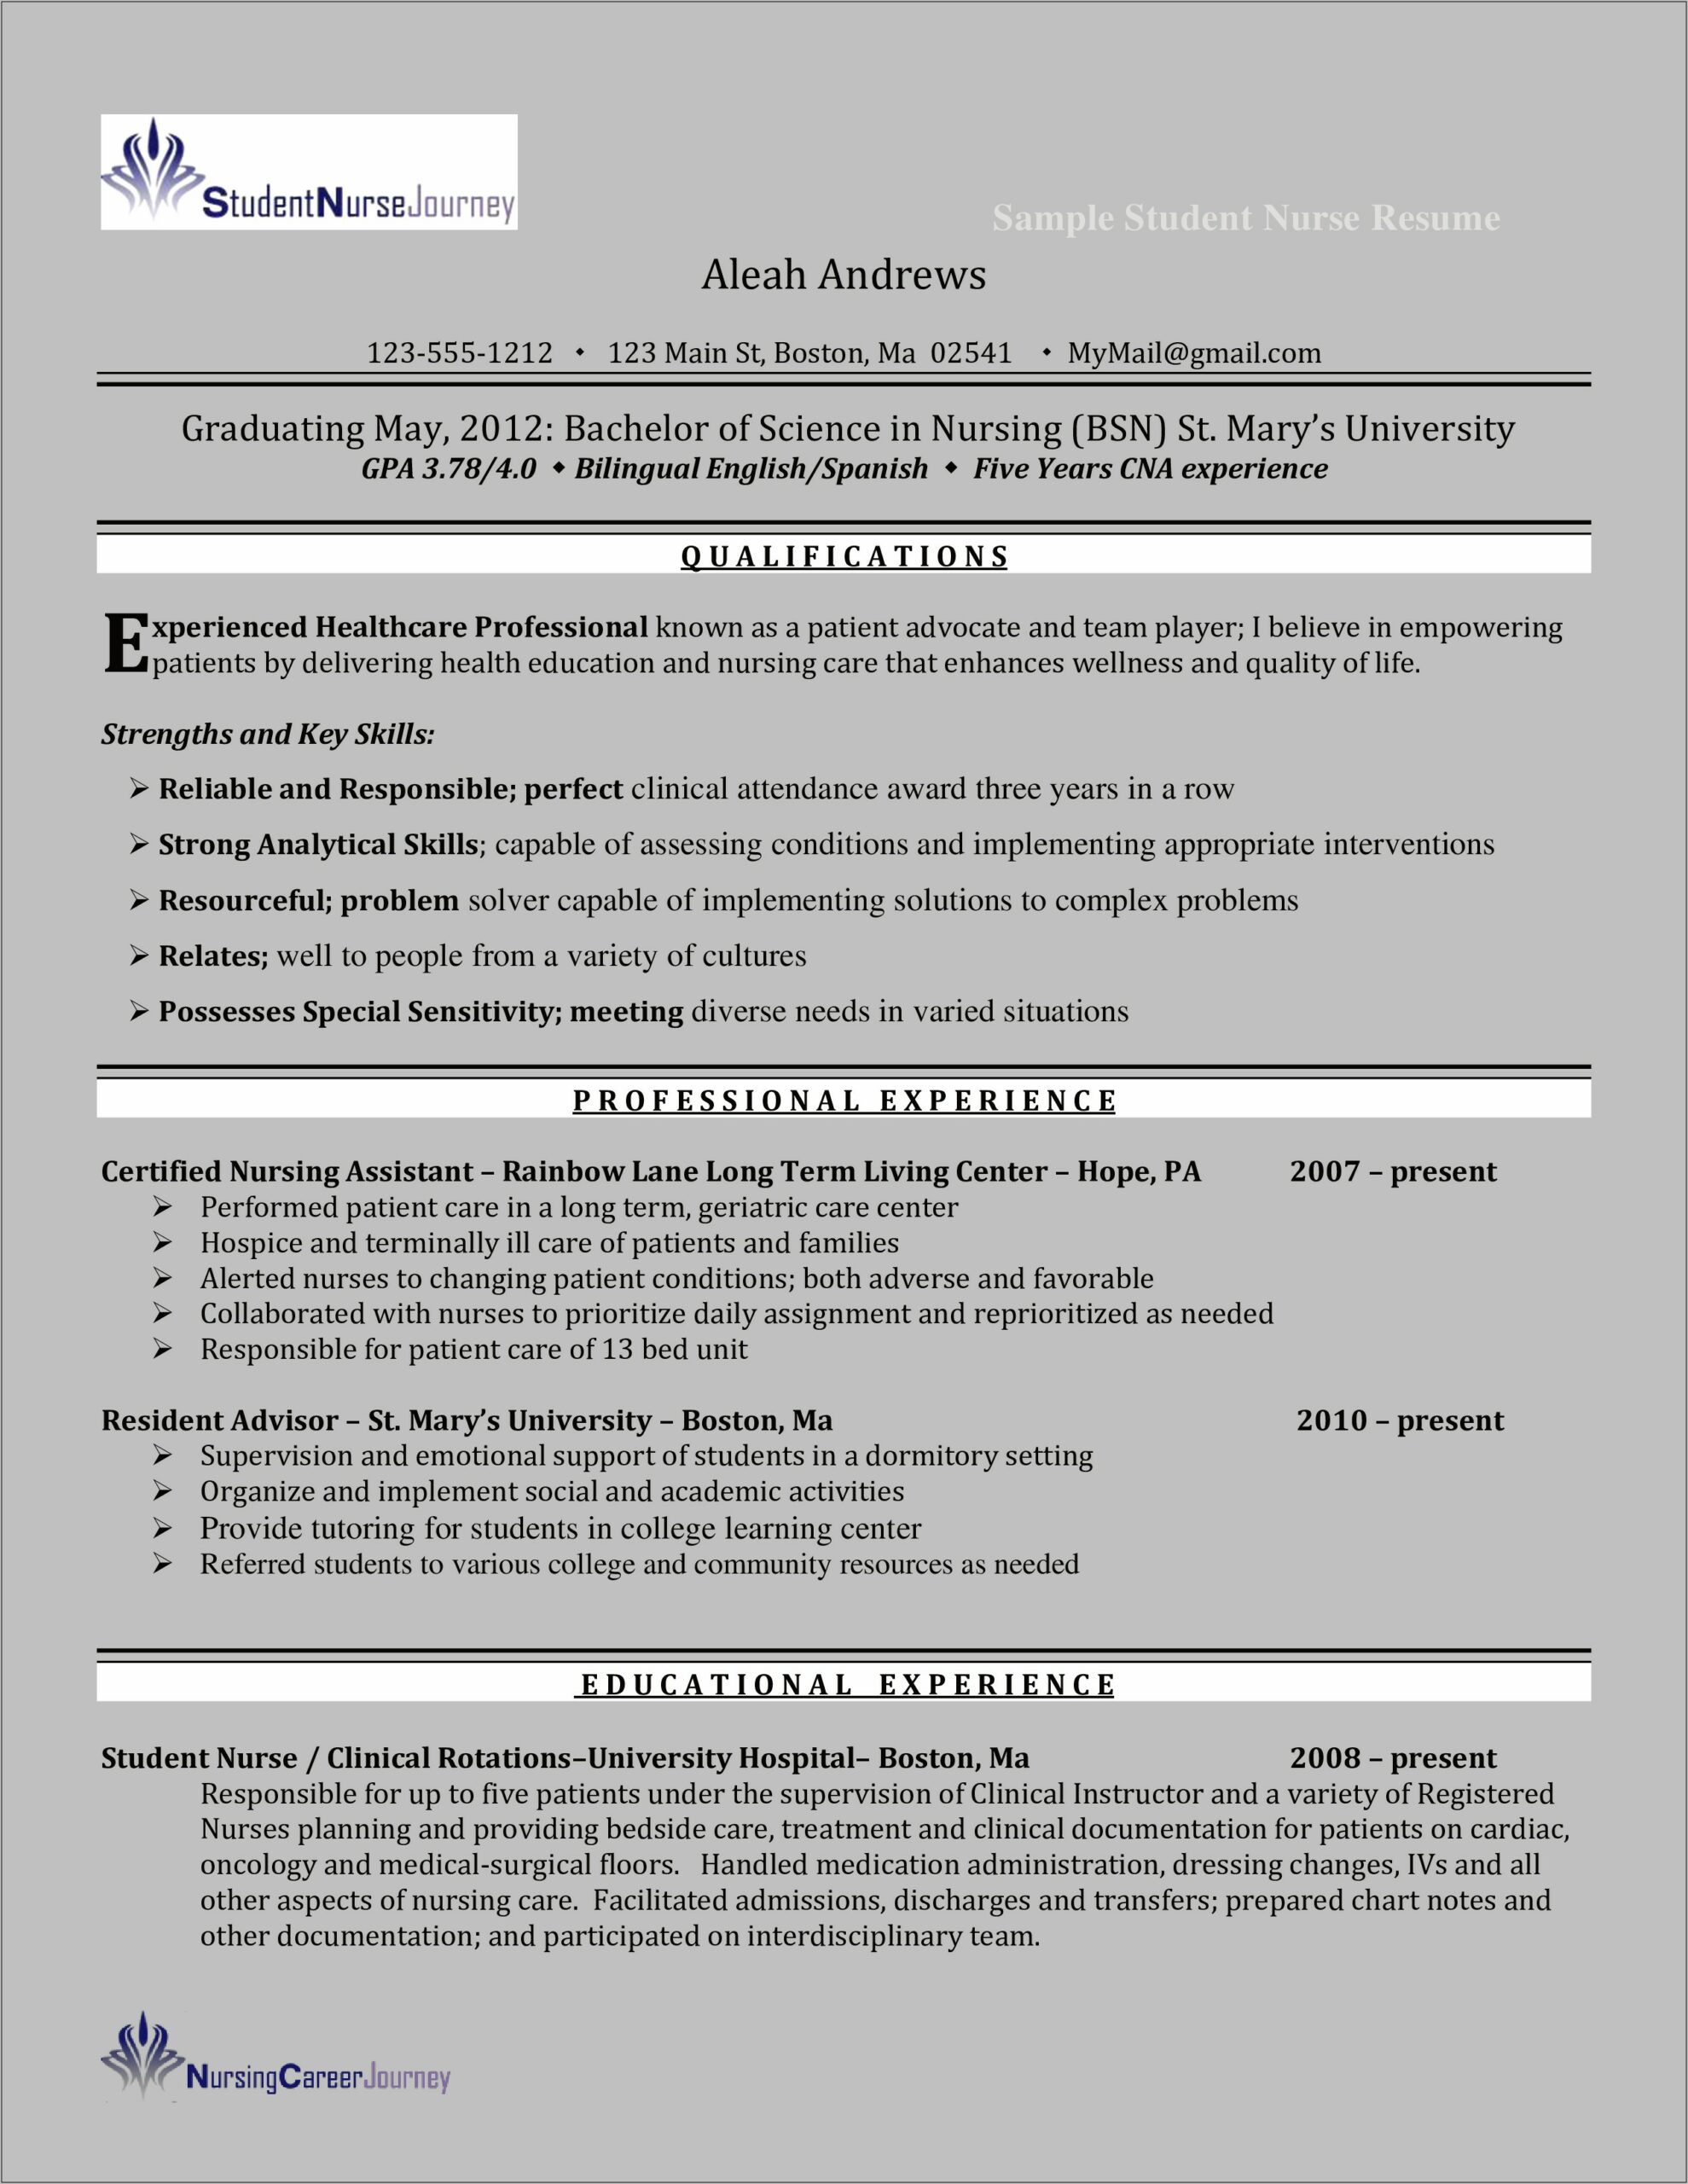 Resume Sample For Rn Care Advisor